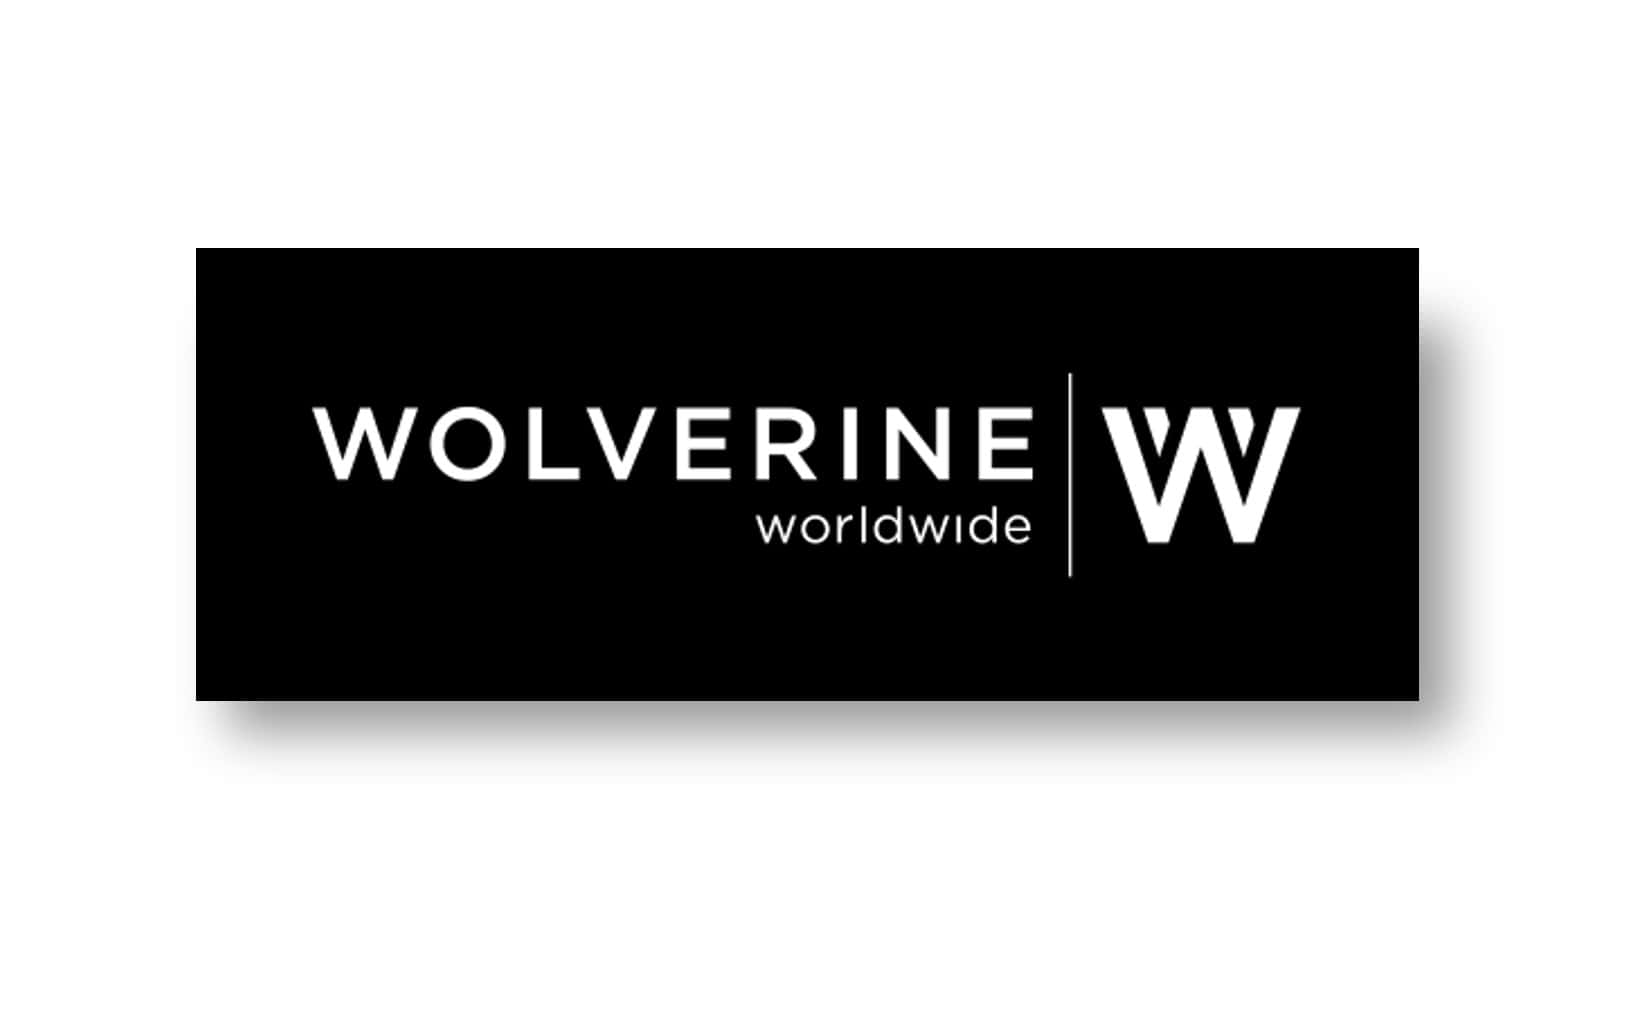 wolverine boots logo